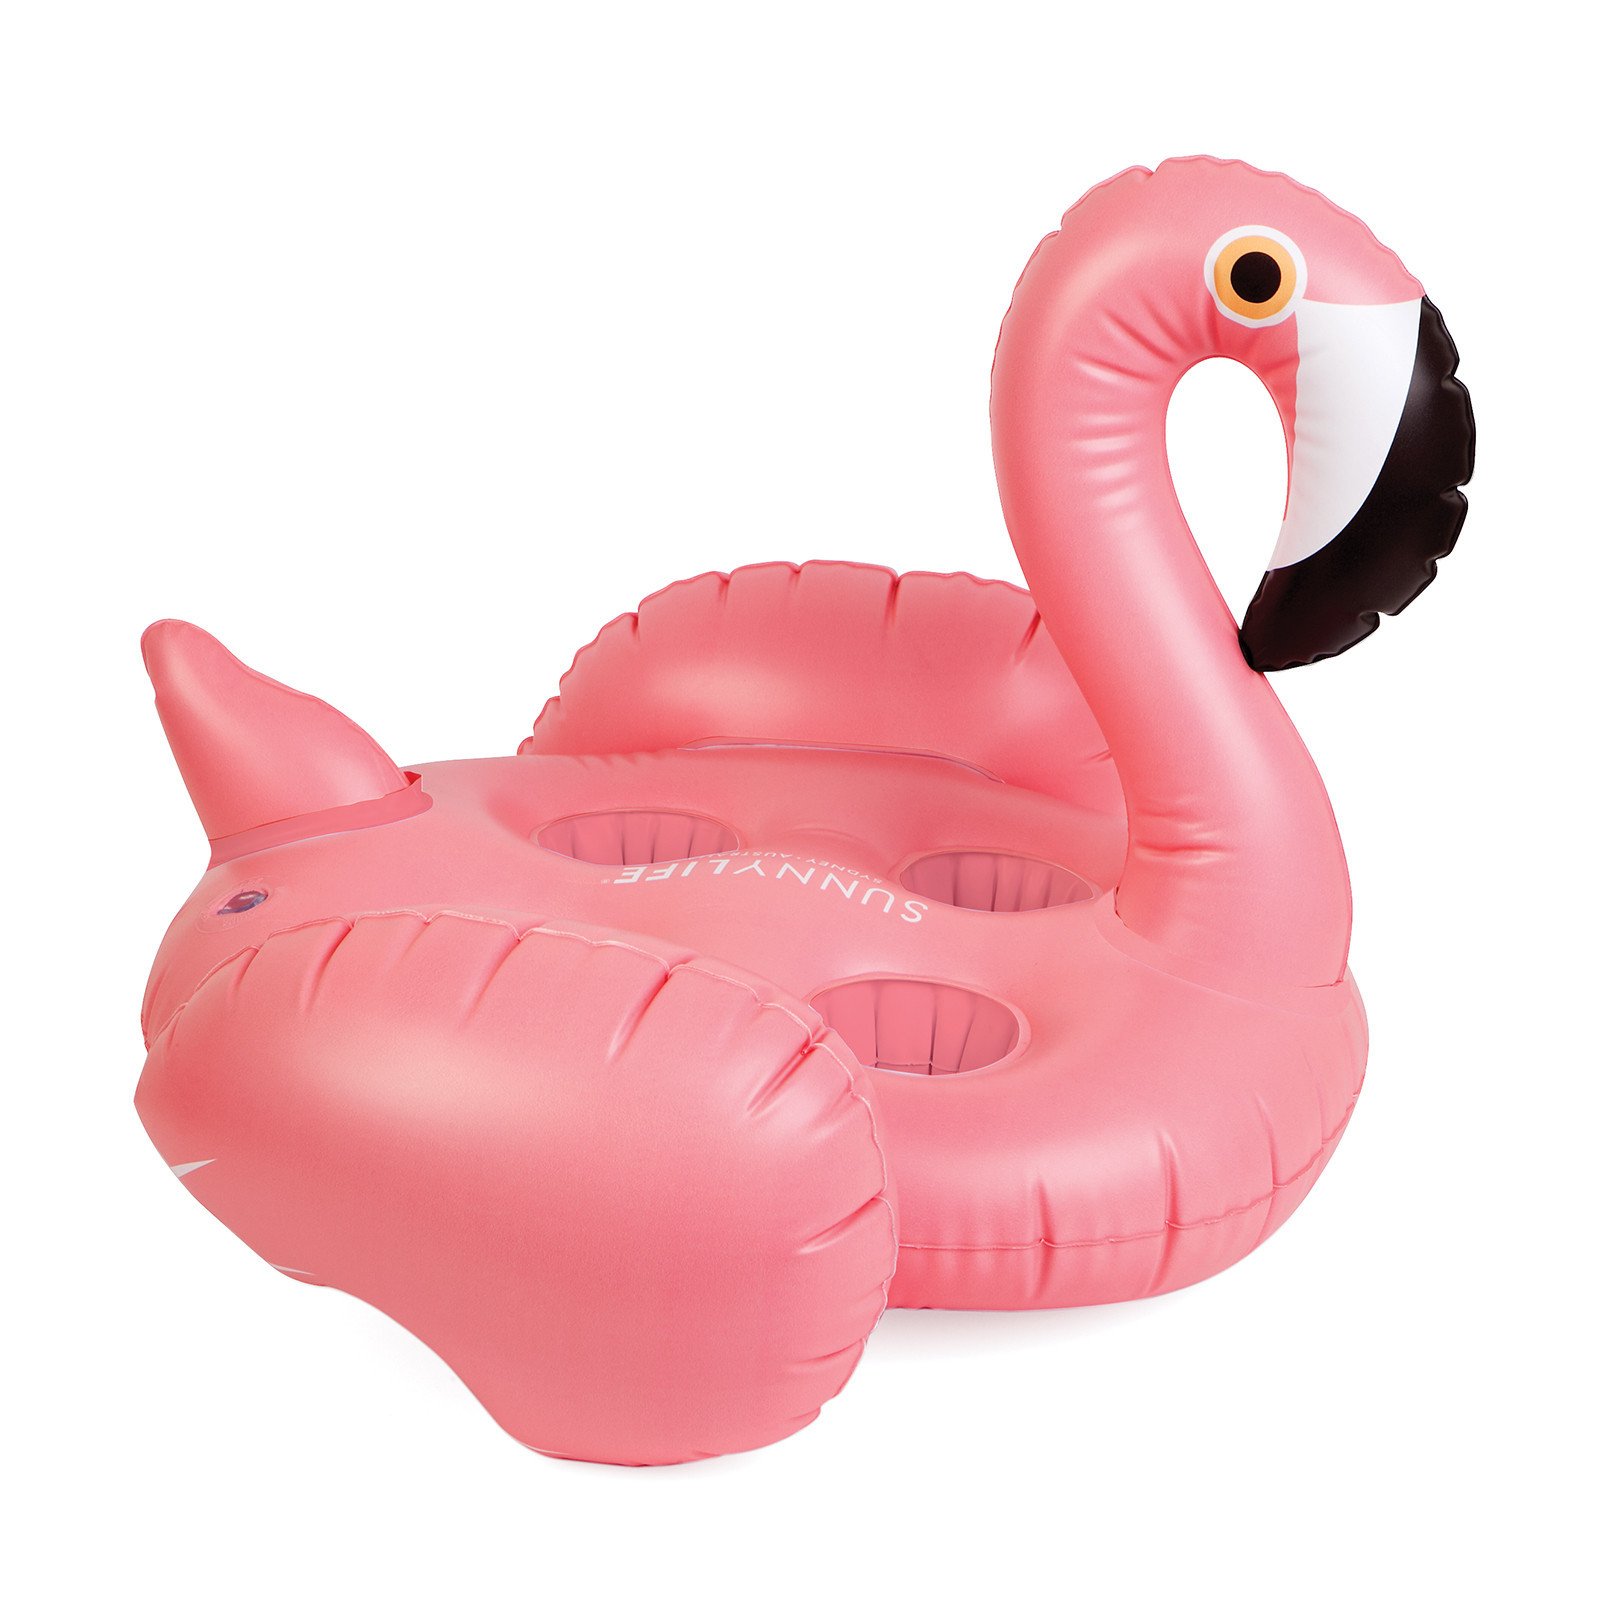 空気注入式 カップホルダーが付いたピンクのフラミンゴ型空気注入式浮き輪 Groovy Flamingo ブランド Sunnylife